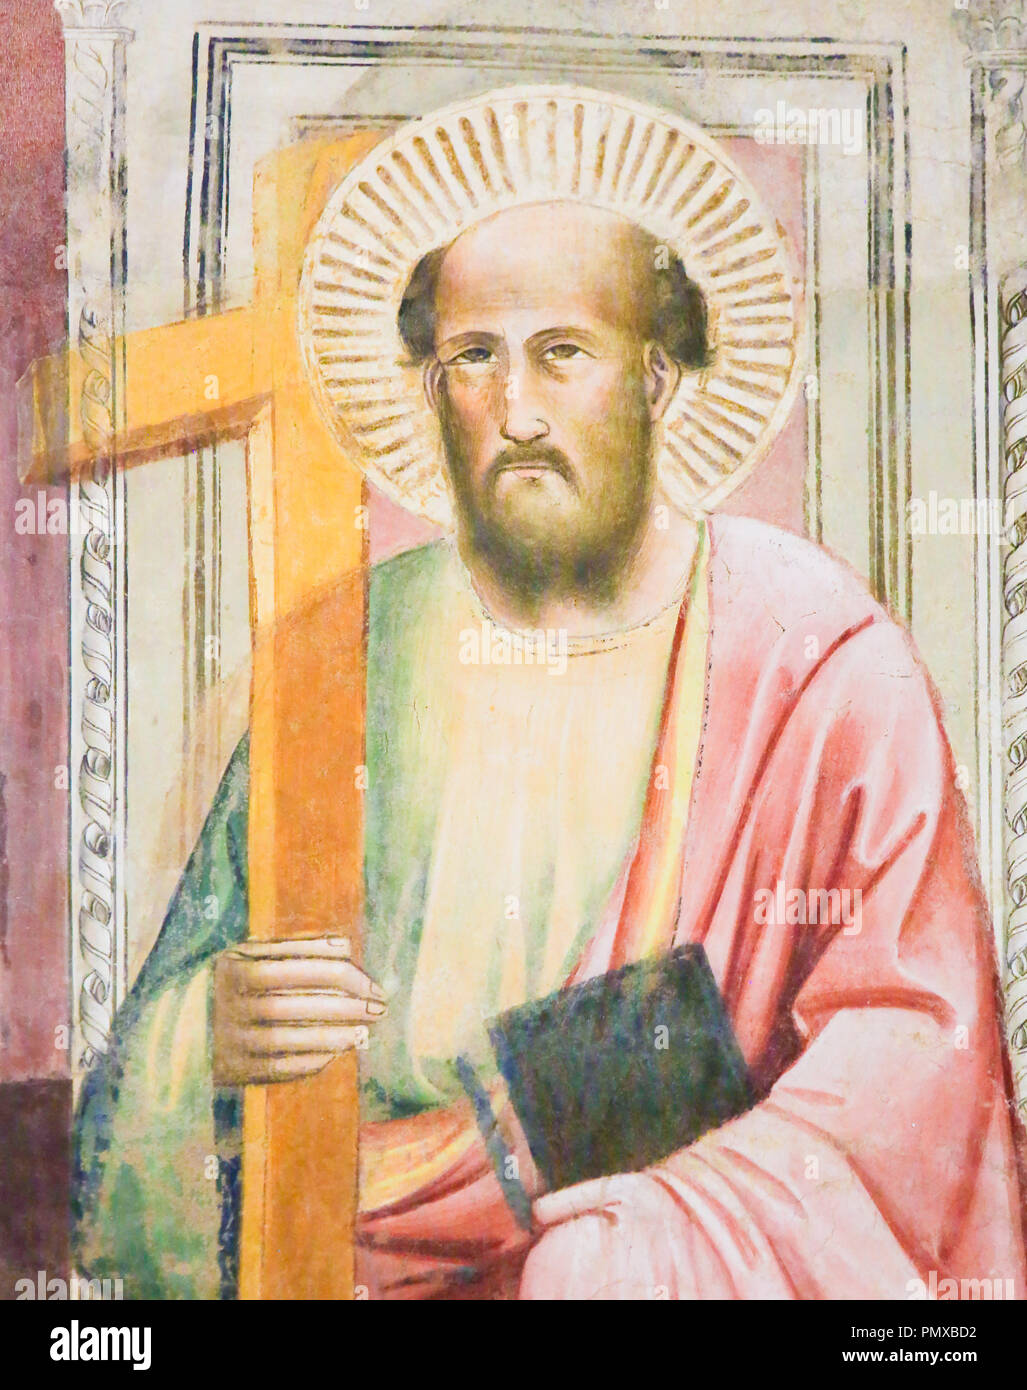 Fresque de Saint Marc l'Évangéliste dans la Basilique Santa Croce, Florence, Italie. Banque D'Images